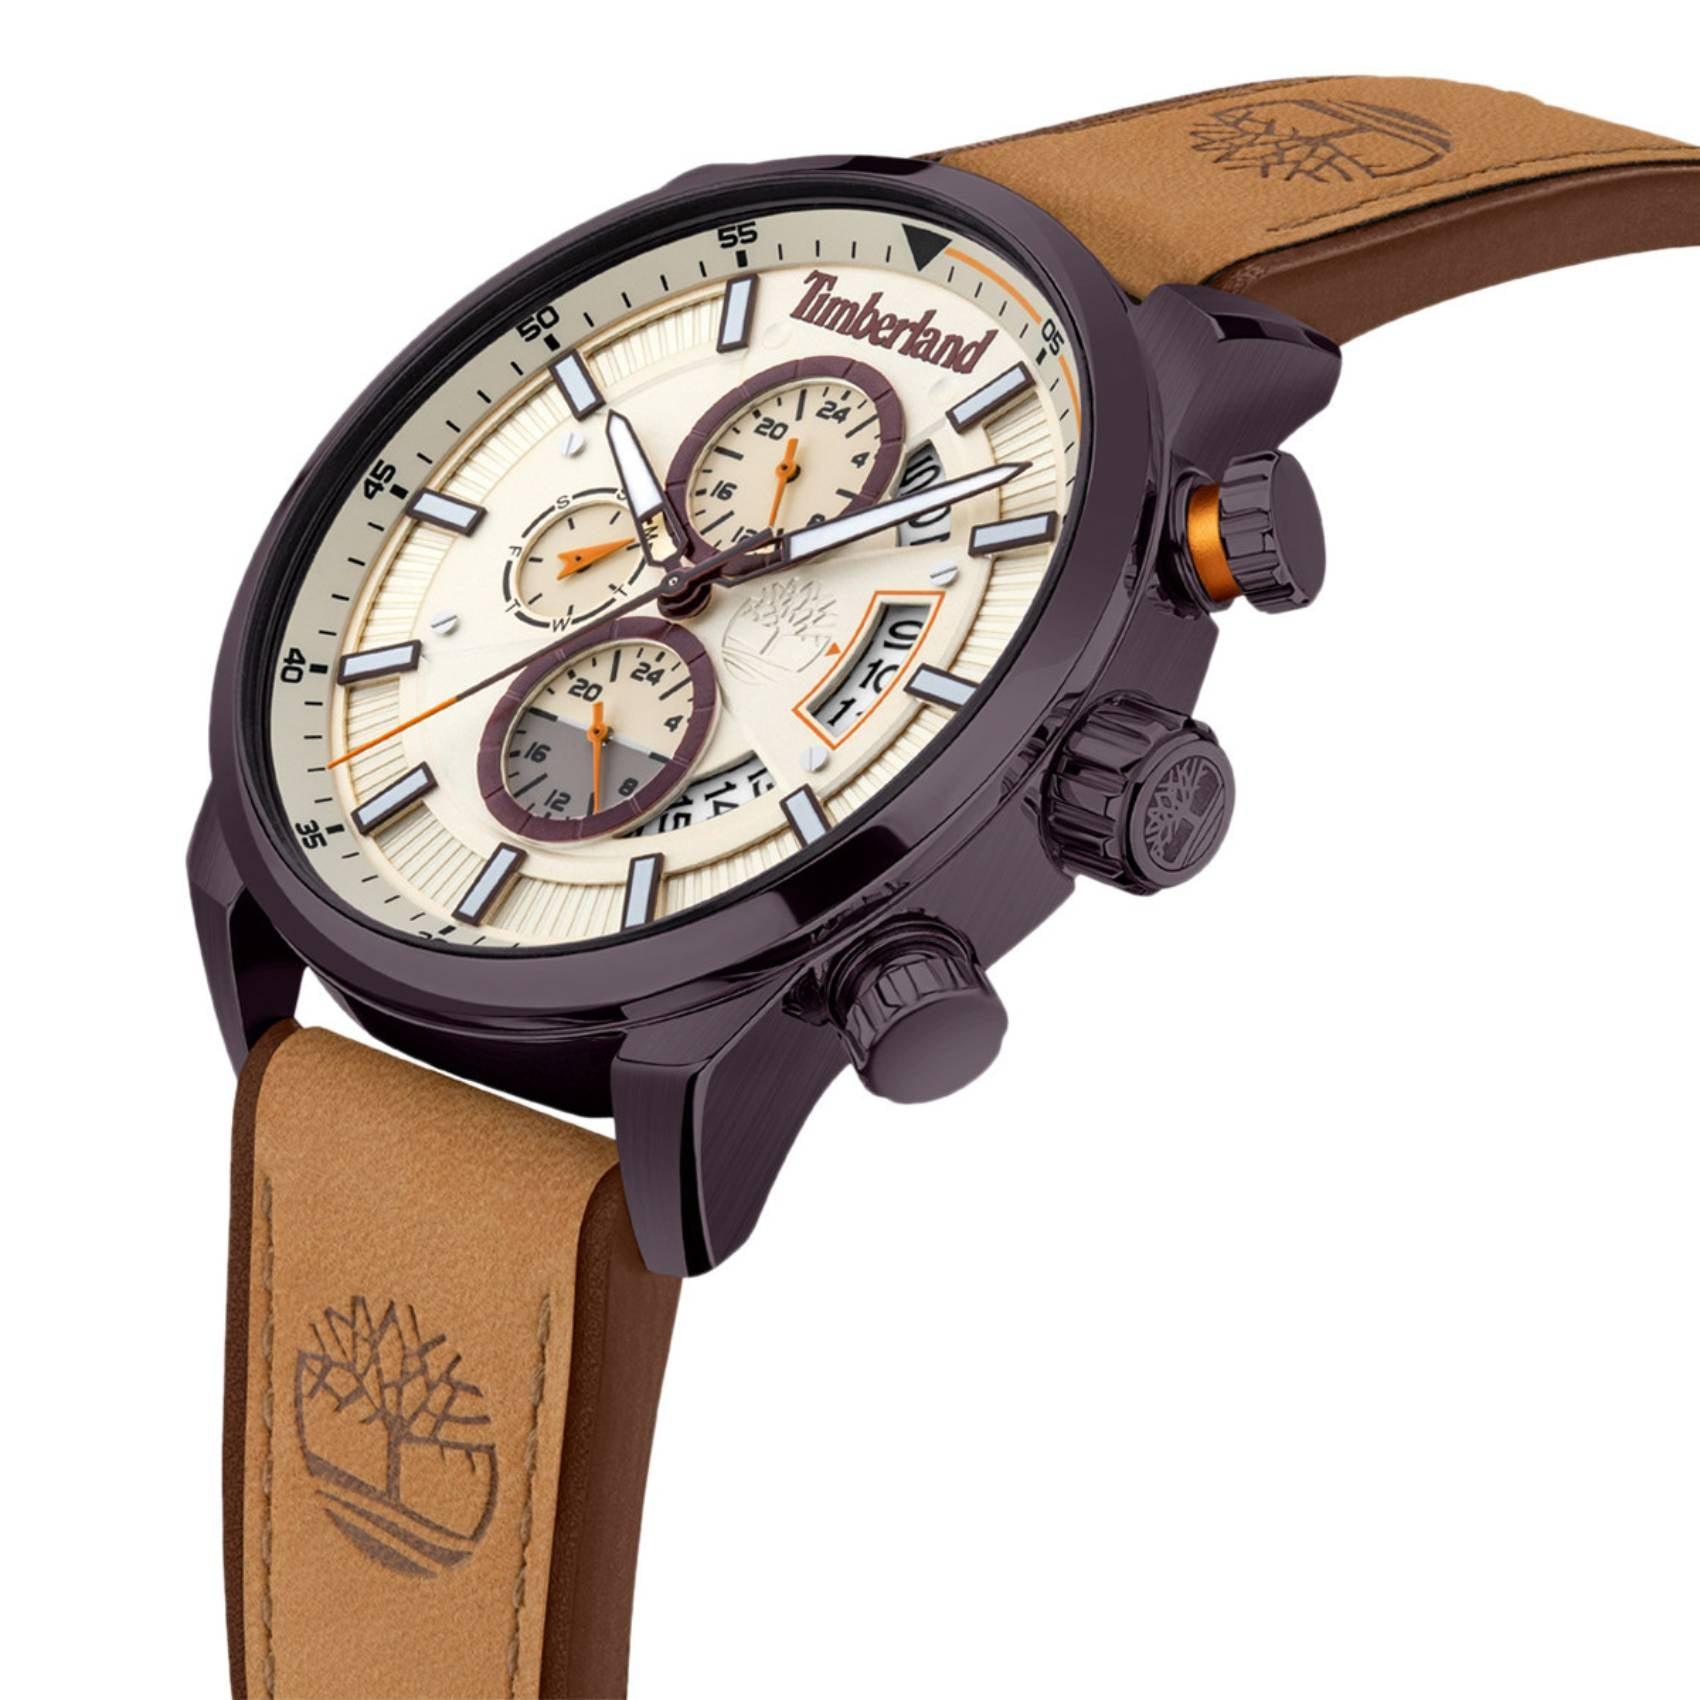 Ρολόι Timberland Callahan TDWGF2102604 με ταμπά δερμάτινο λουρί, μπεζ καντράν και κάσα διαμέτρου 46mm με ένδειξη ημερομηνίας και χρονογράφους.